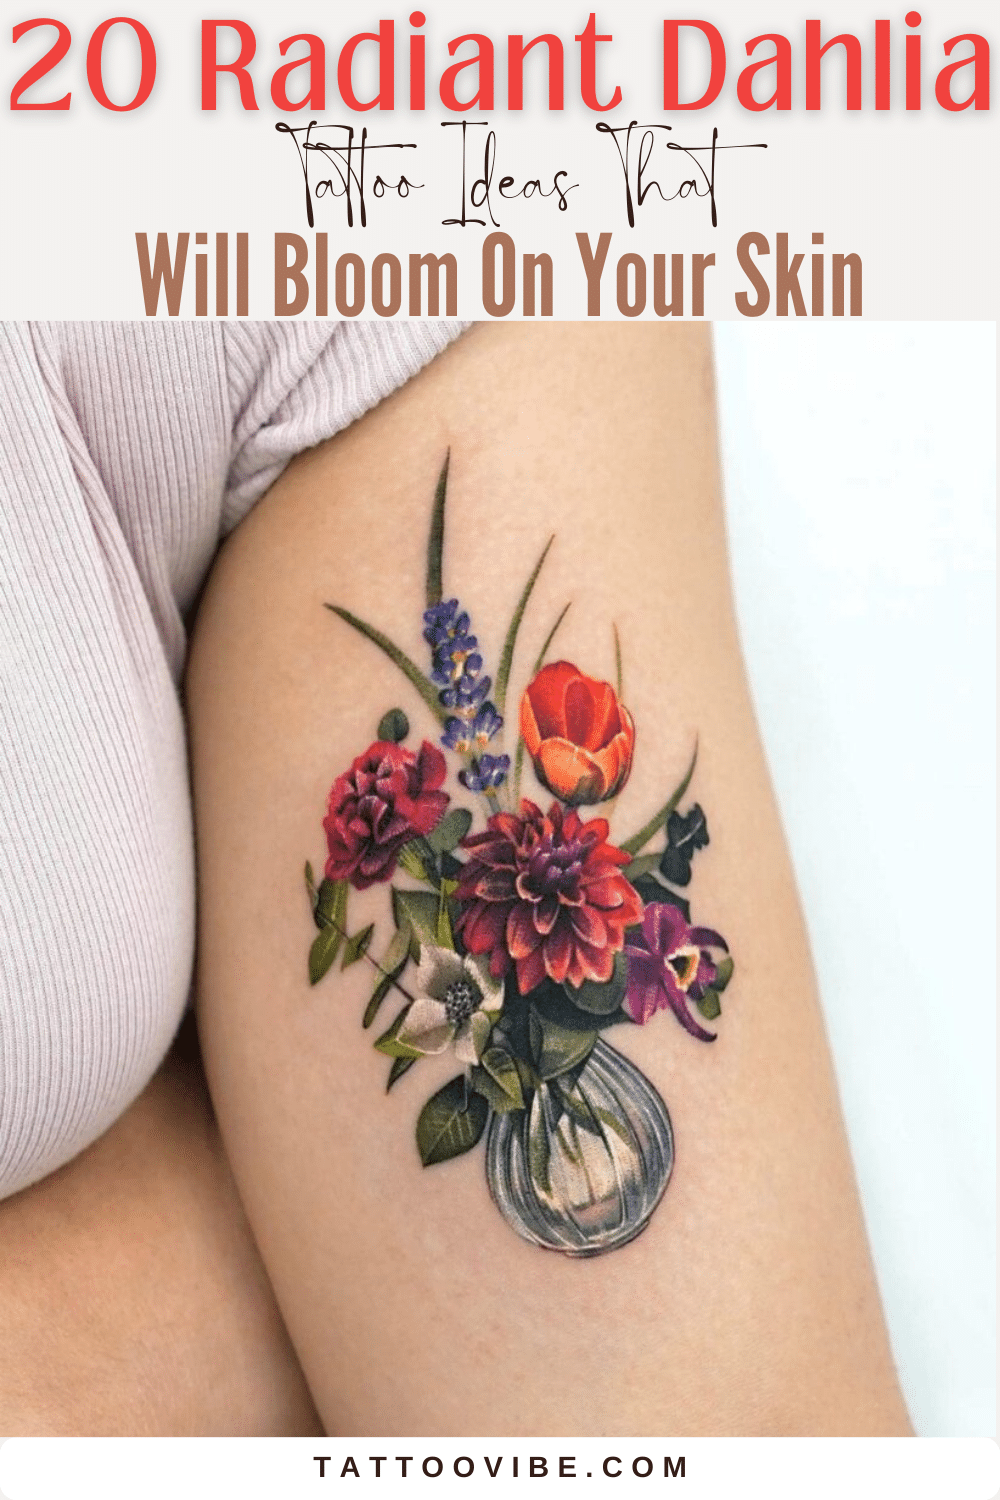 20 ideias de tatuagens de dálias radiantes que vão florescer na sua pele